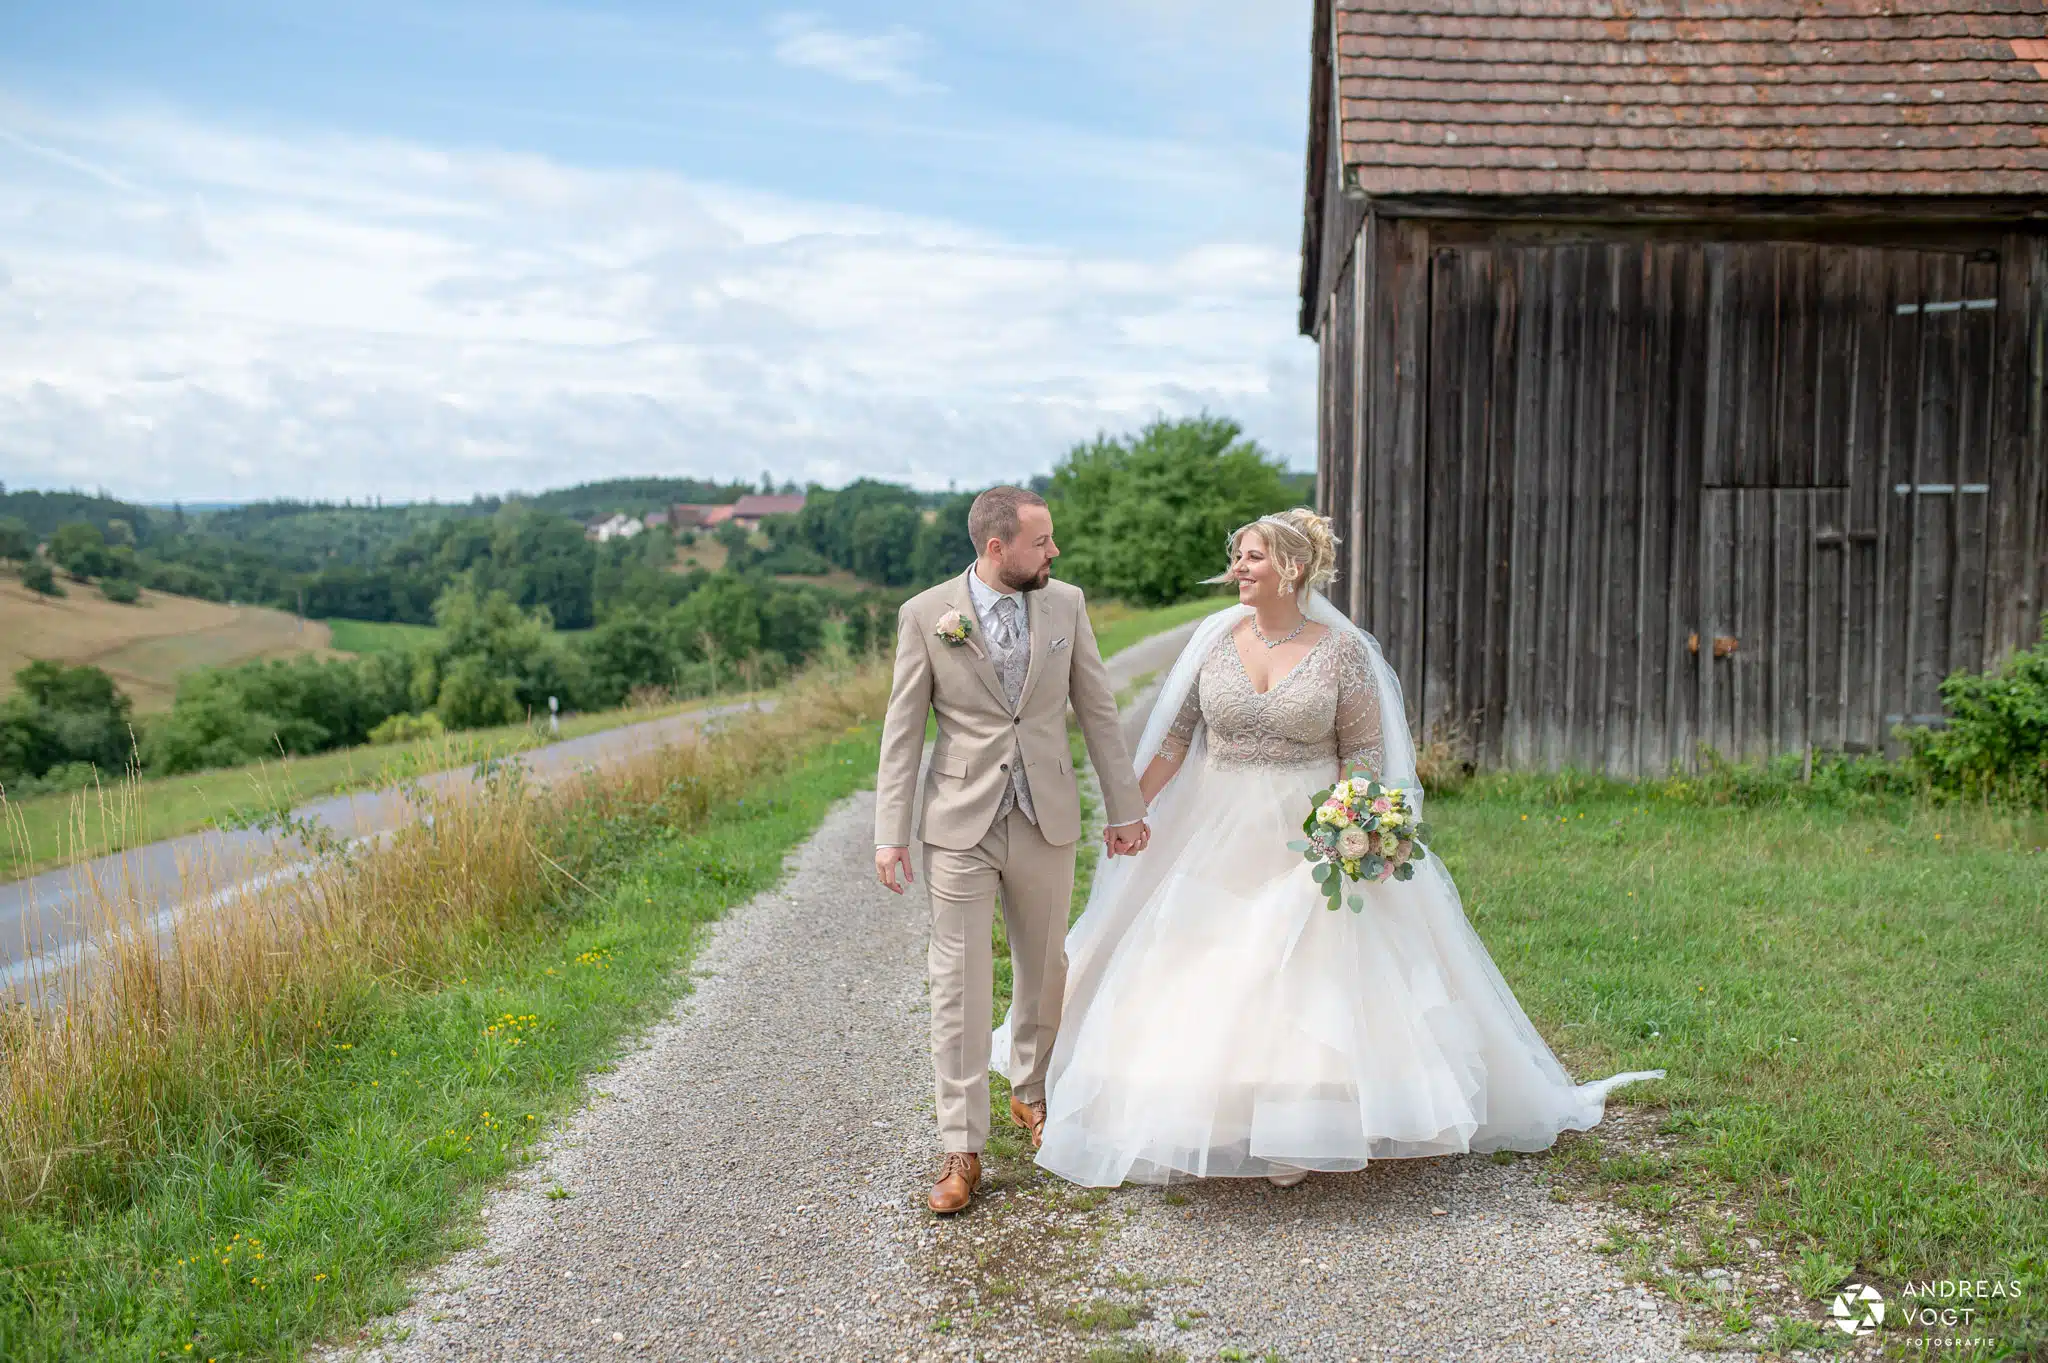 Isabell und Thorsten bei ihrem Brautpaarfotoshooting mit Fotograf Andreas Vogt